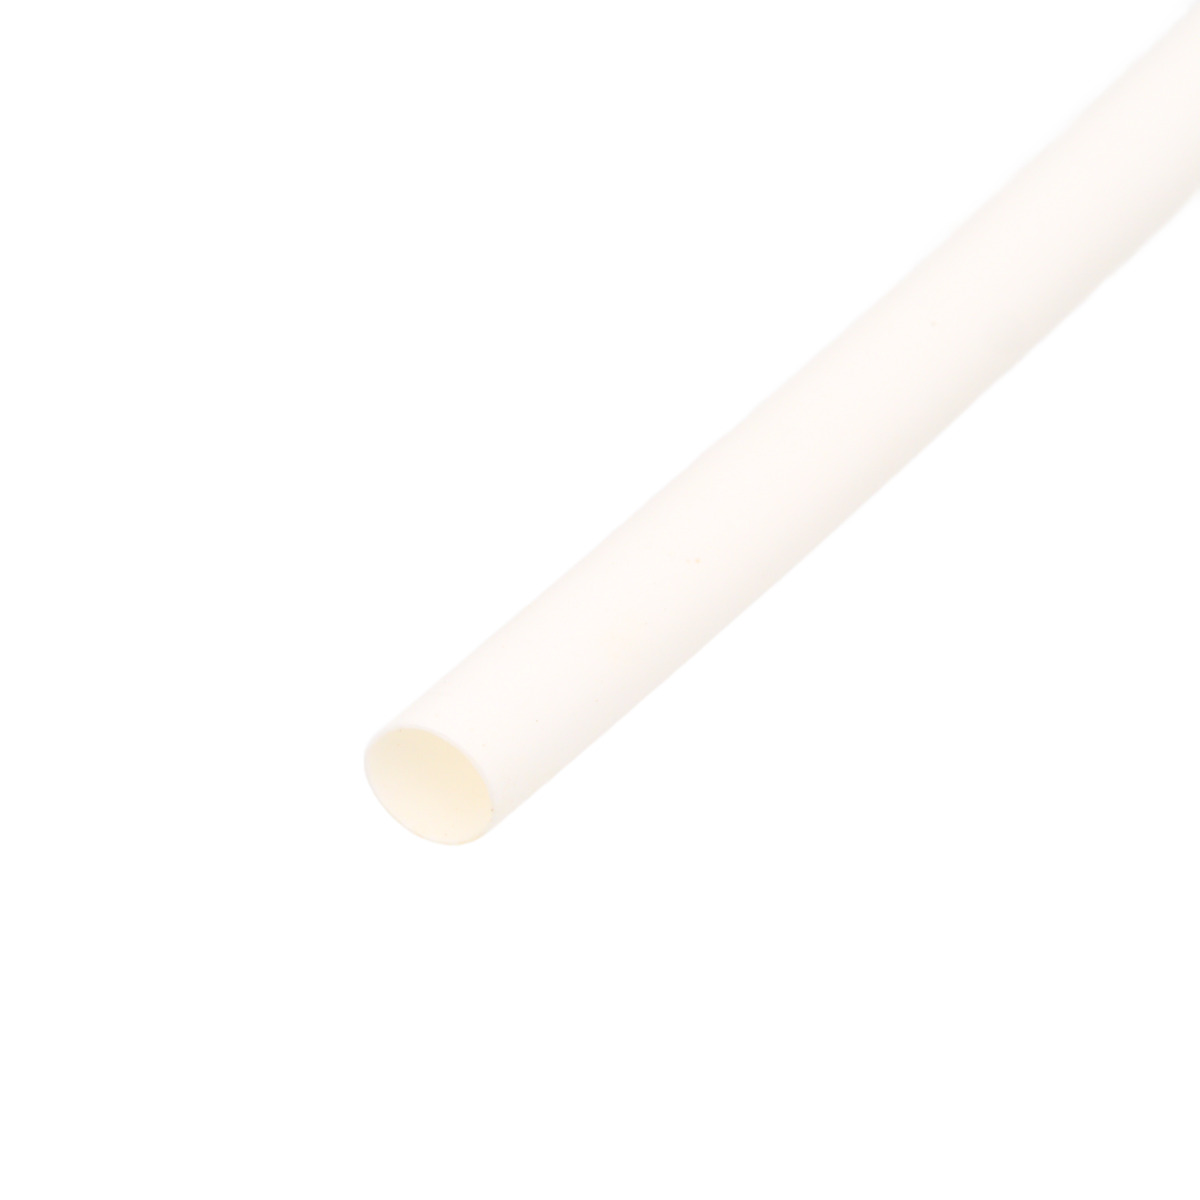 Pack de corte [1.2m] de tubo termorretráctil 2:1 Ø38.1mm blanco – Poliolefina libre de halógeno e ignífugo [x5]